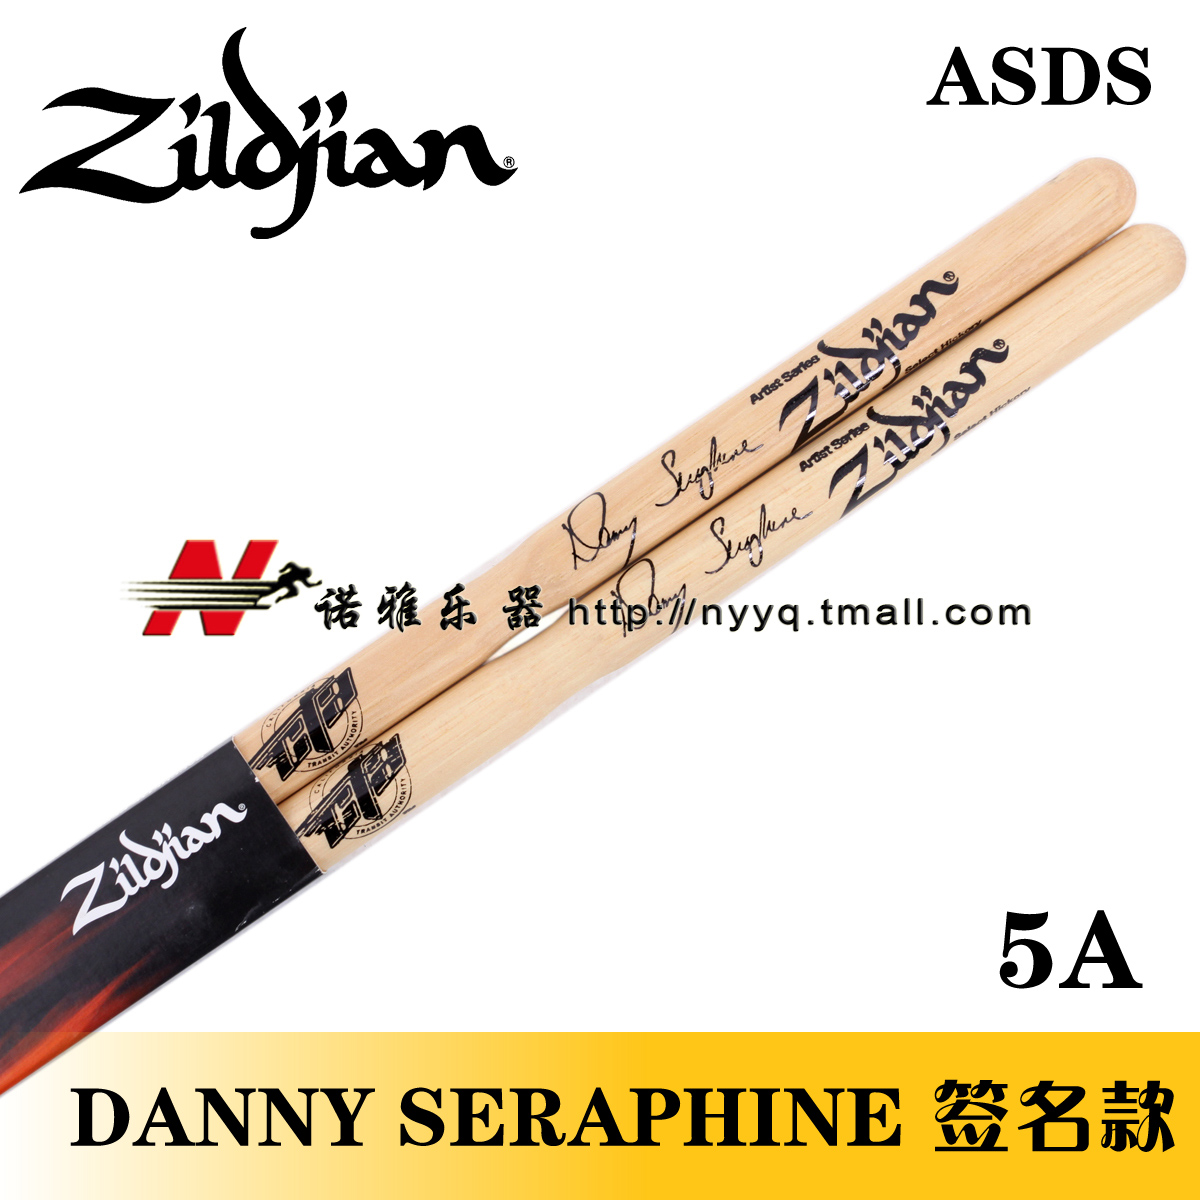 Барабанные палочки Zildjian DANNY SERAPHINE 5A ASDS